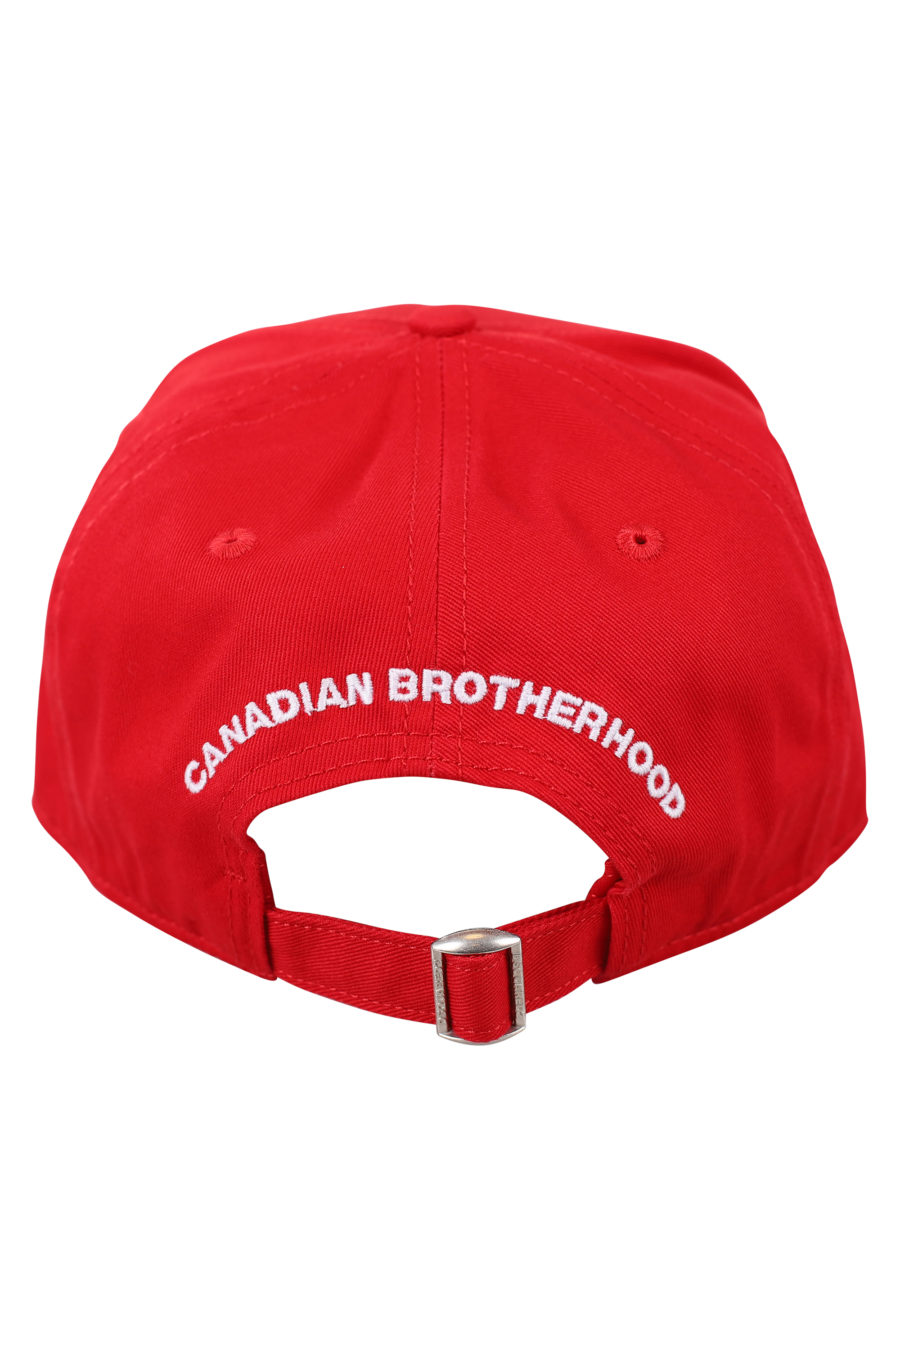 Verstellbare rote Kappe mit kleinem weißen Logo - IMG 0470